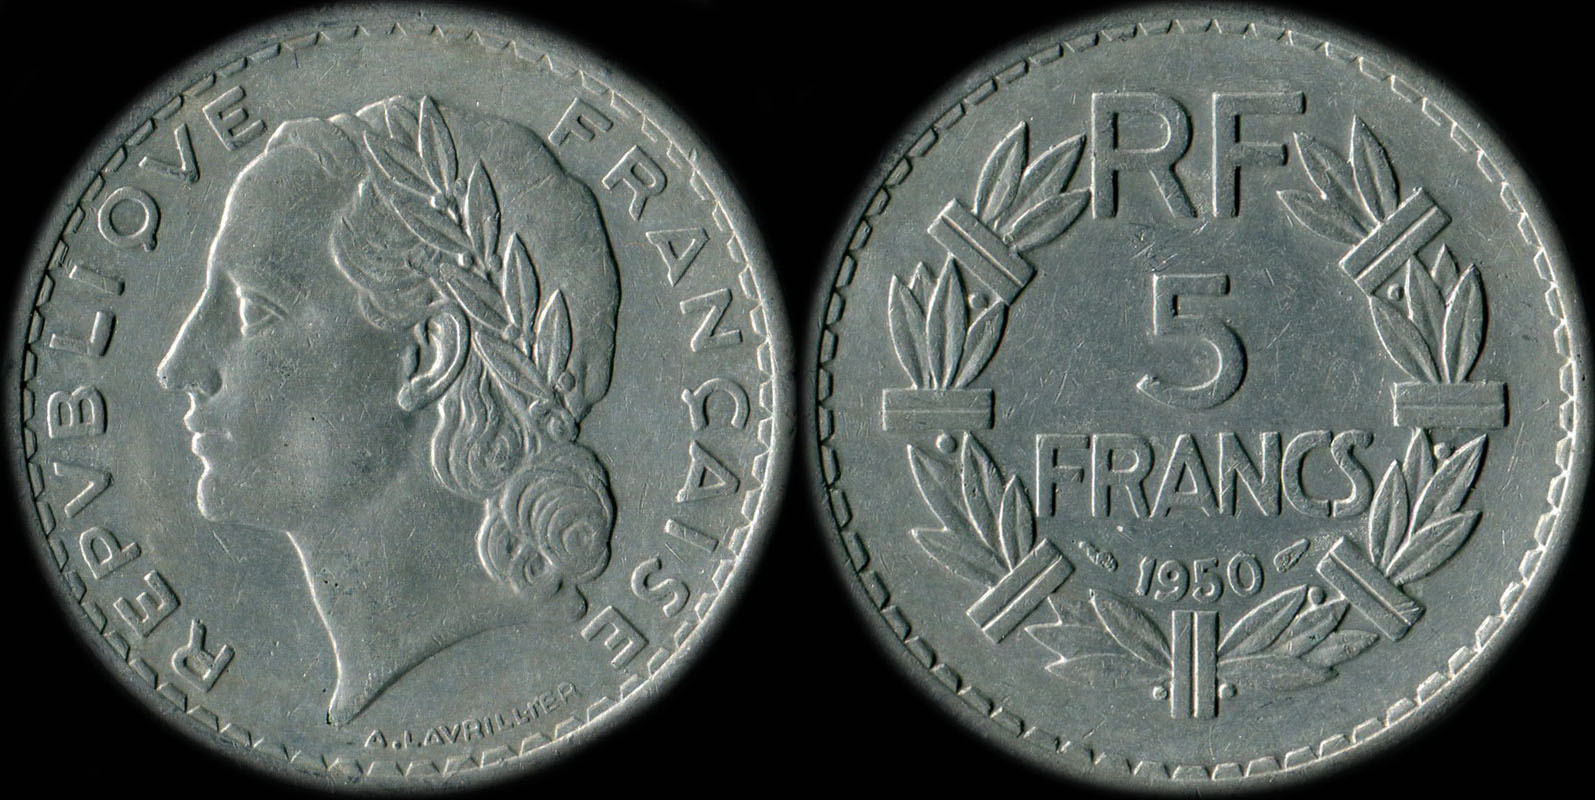 Pice de 5 francs Lavrillier 1950 aluminium